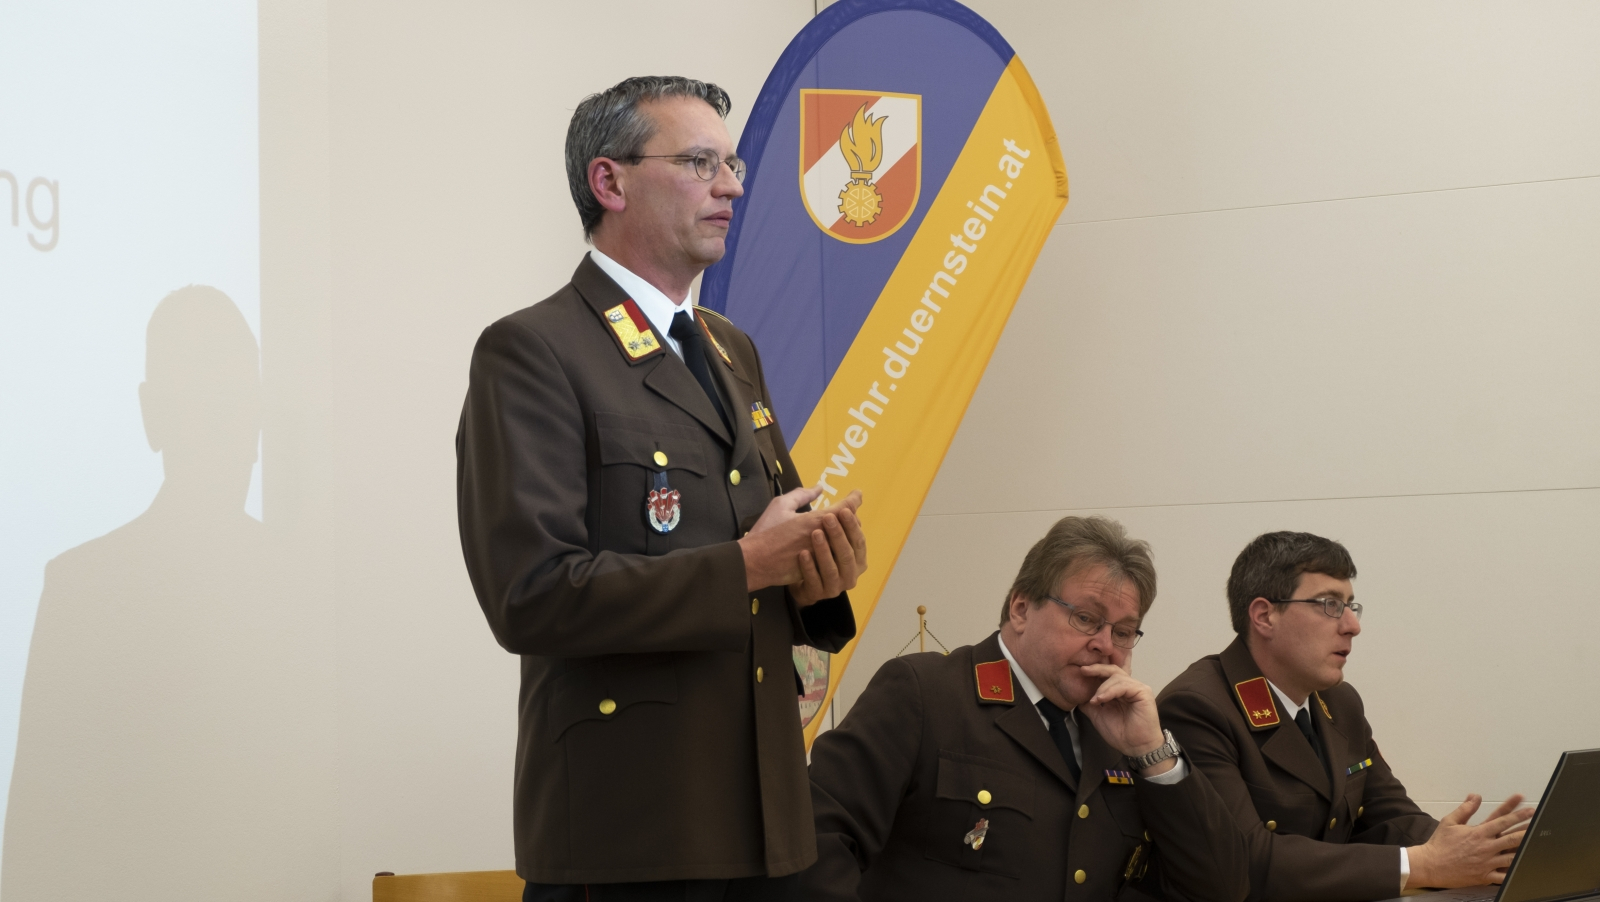 Kommandant Bauer eröffnet die Mitgliederversammlung 2019